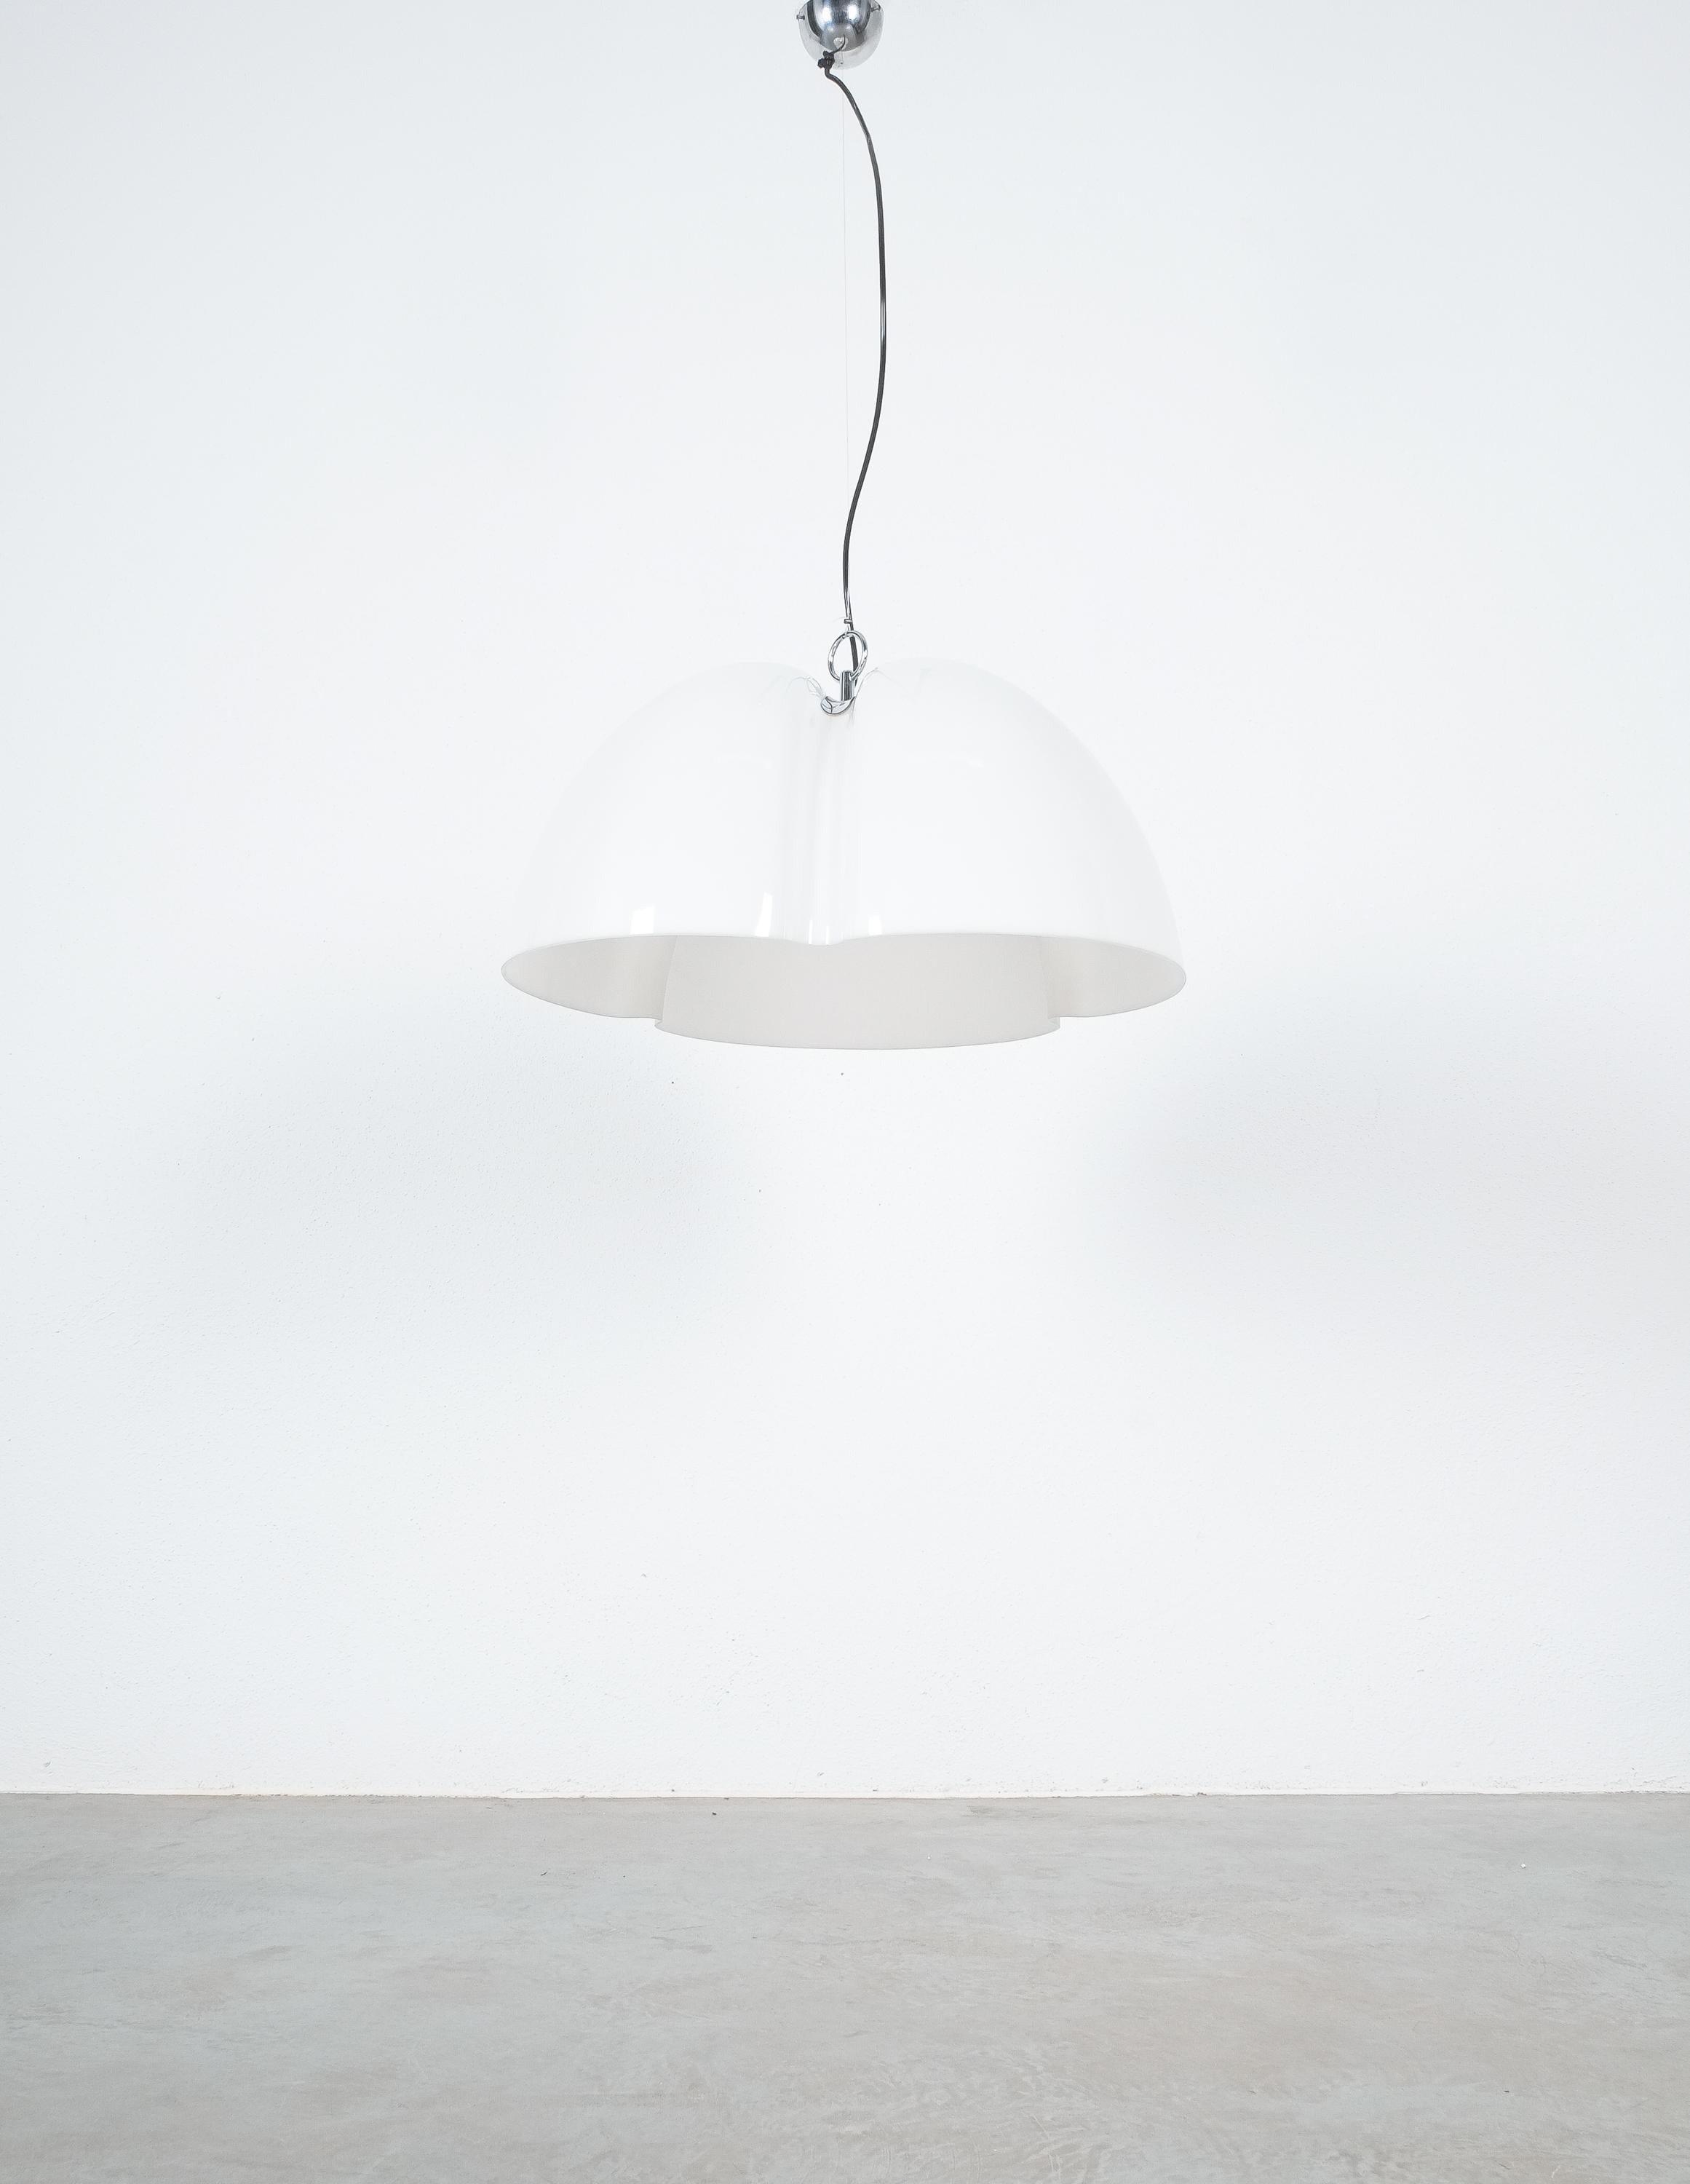 Tricena I by Ingo Maurer for Design M Large Pendant Lamp, 1968 For Sale 1